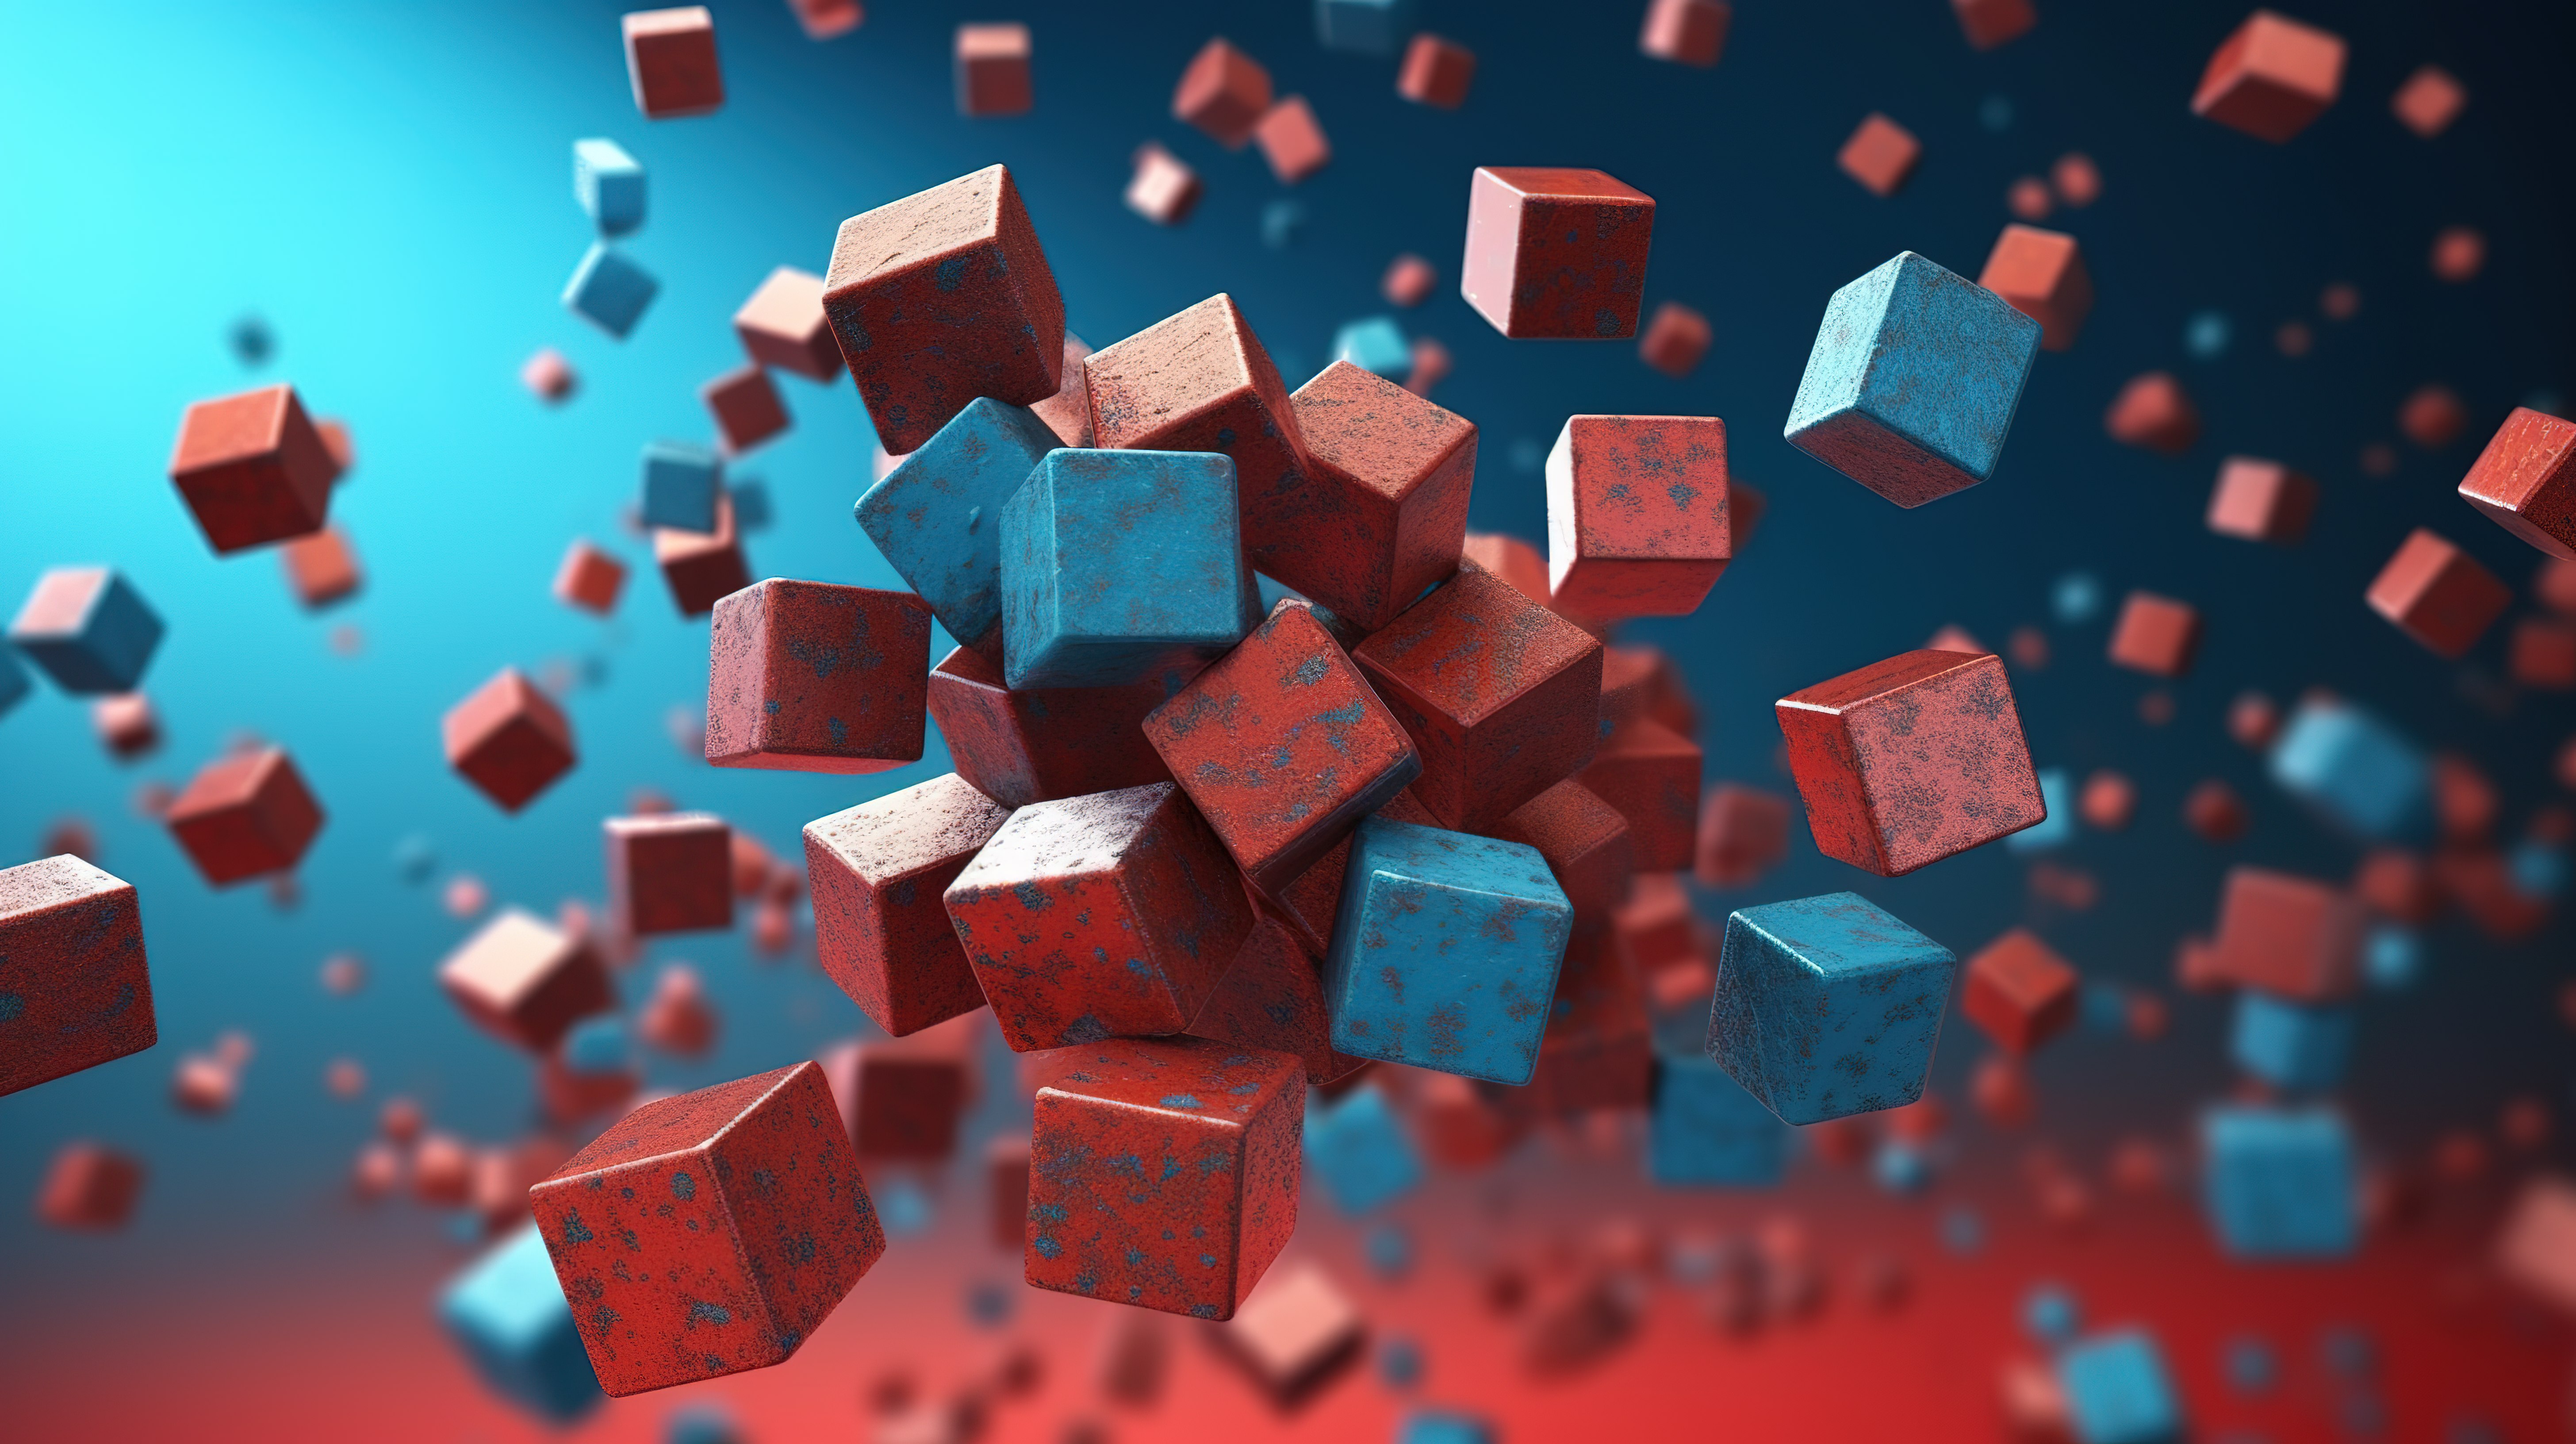 空中金属立方体在生动的蓝色和火红色背景下呈现 3D 视觉享受图片